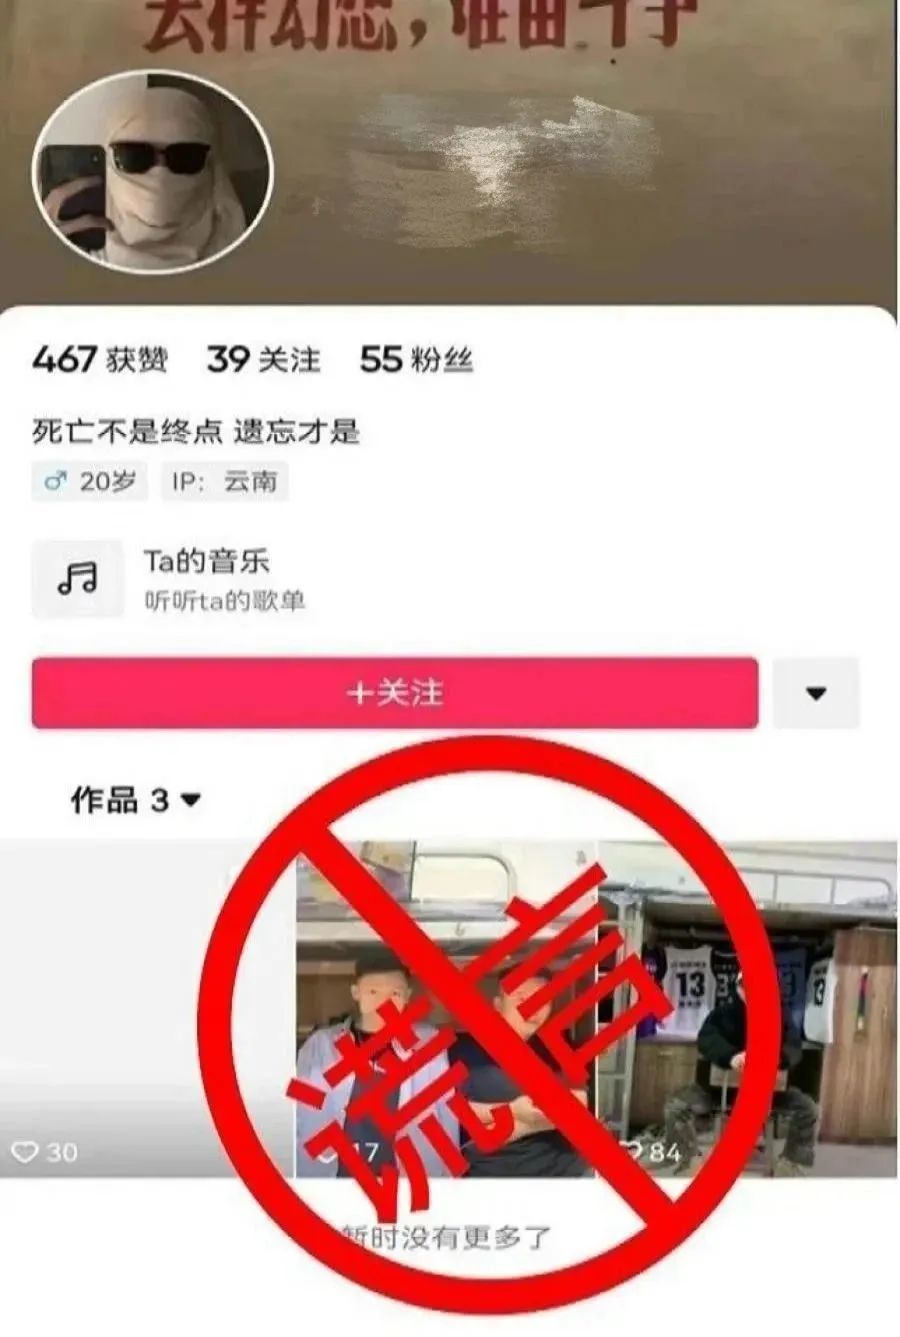 云南网警依法处置“室友霸凌准备复仇”谣言